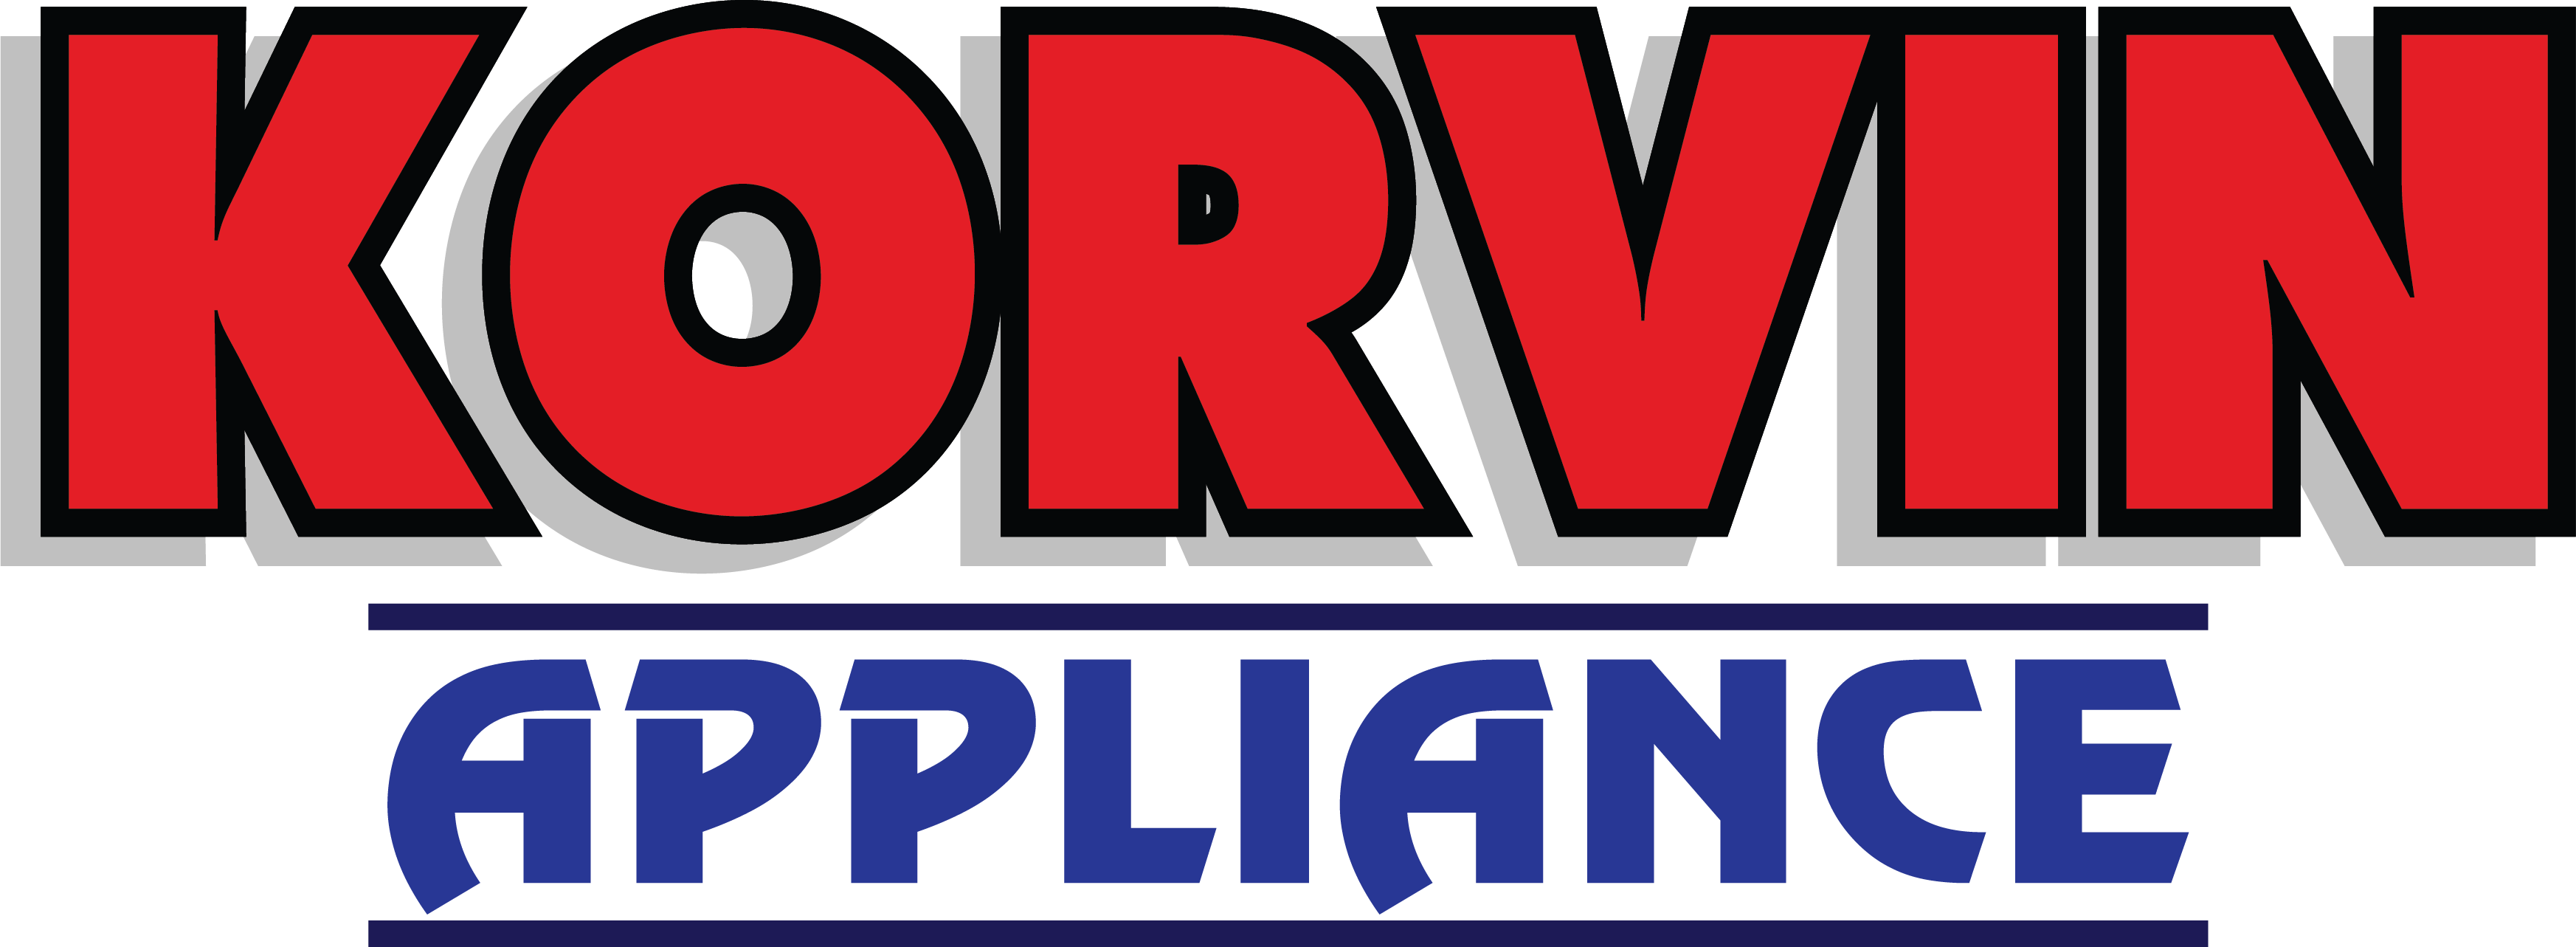 Korvin Appliance Inc.